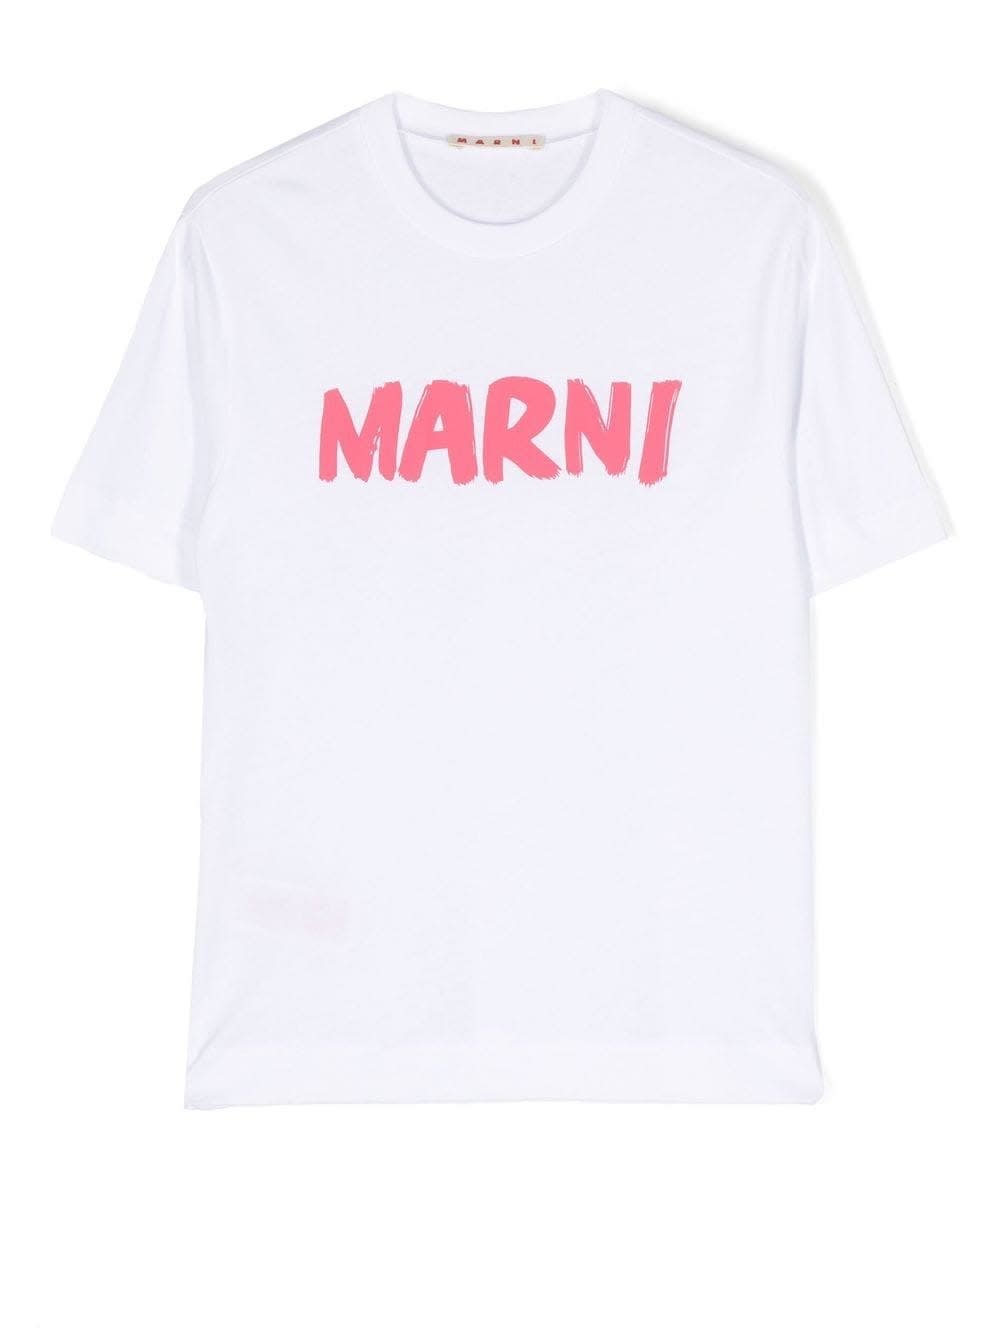 MARNI PRINTED T-SHIRT